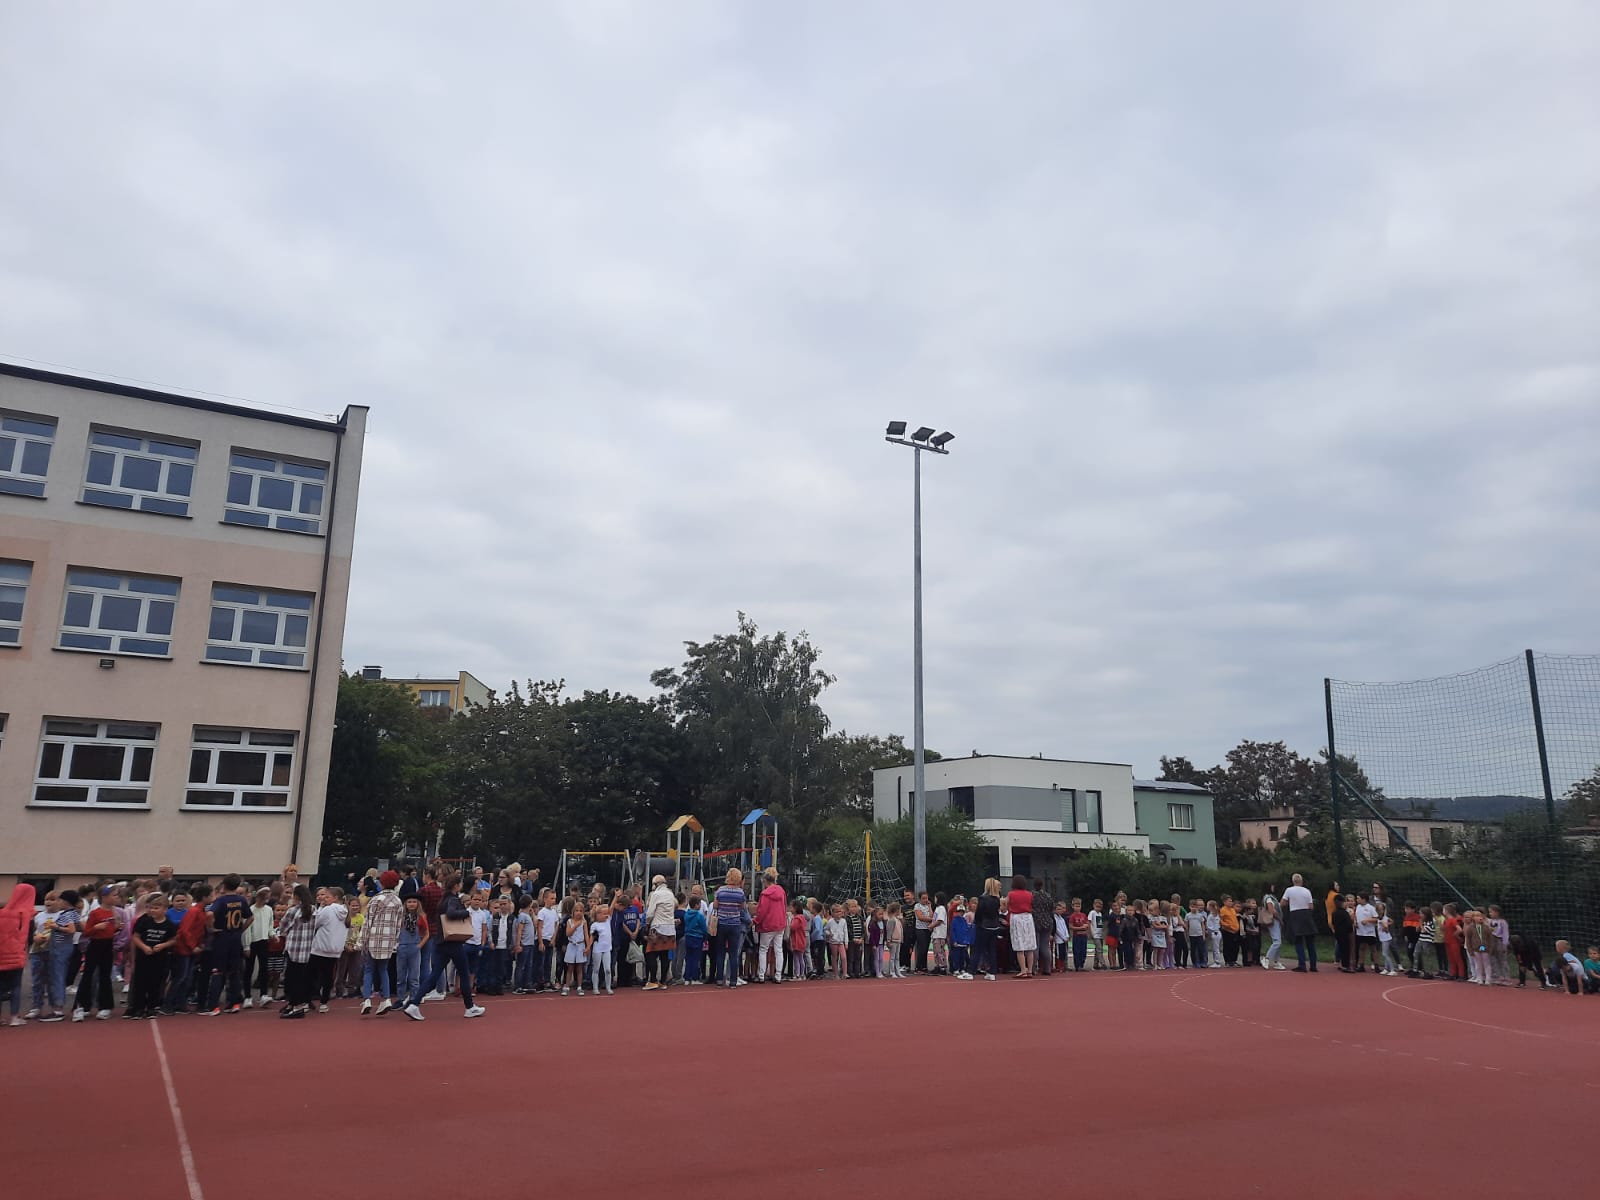 Osoby obecne w szkole podczas ogłoszenia próbnego alarmu przeciw pożarowego stoją na boisku szkolnym.